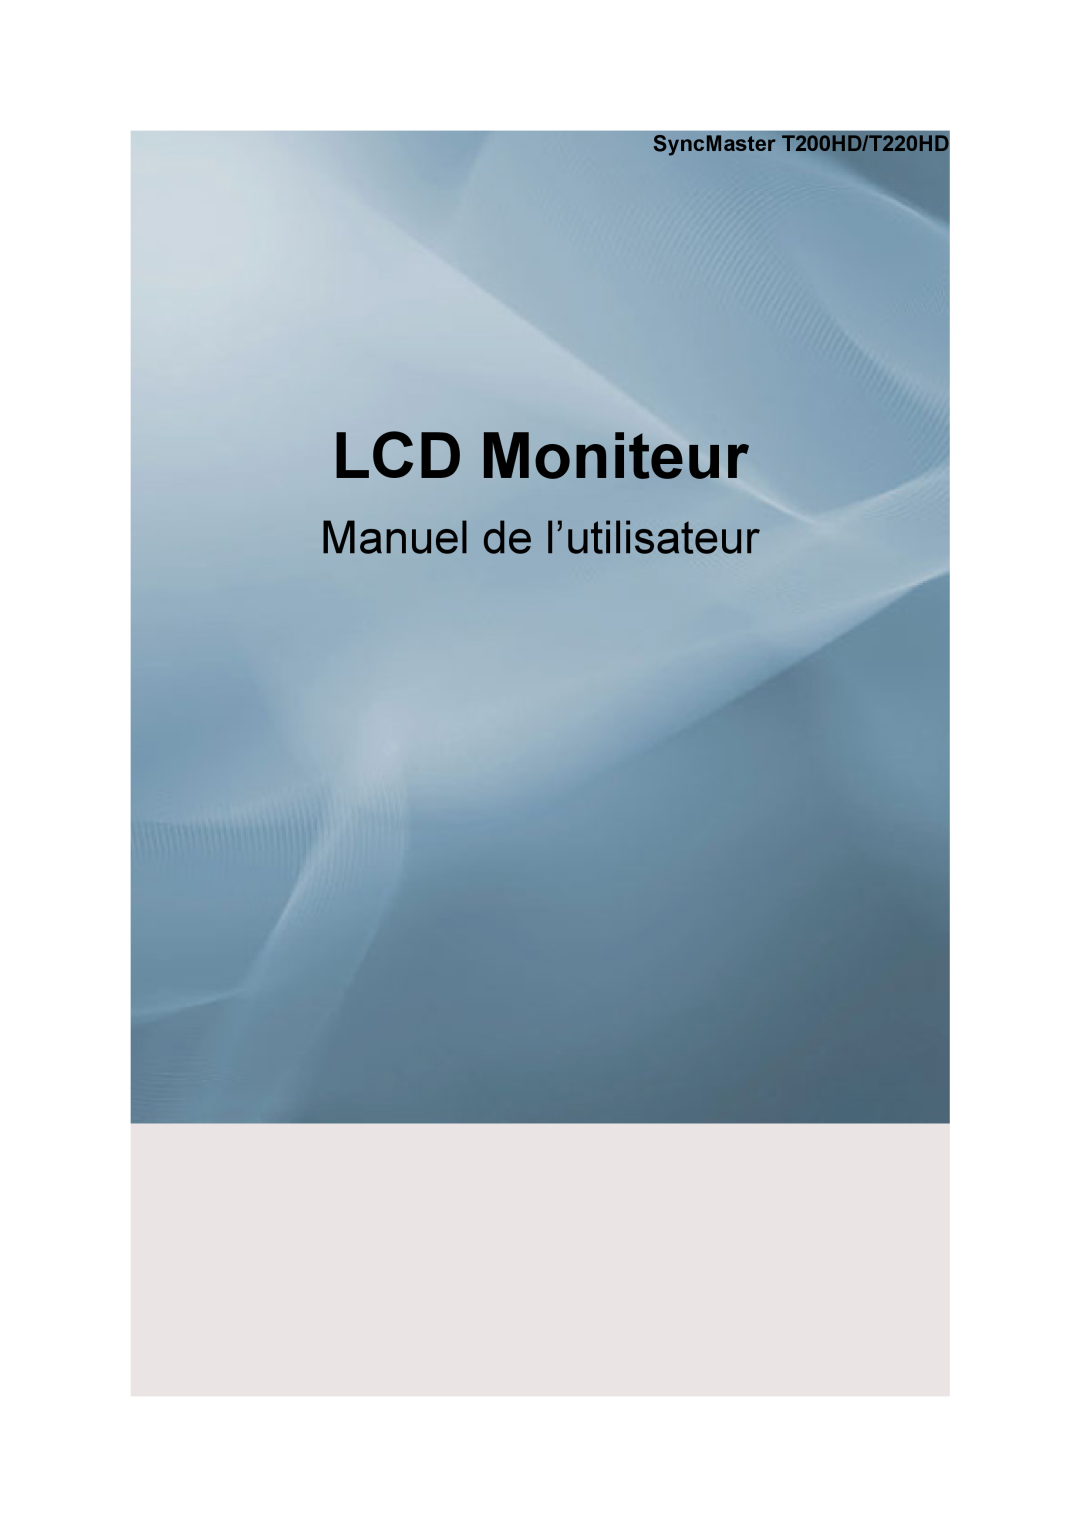 Samsung LS22TDVSUV/EN, LS20TDVSUV/EN, LS20TDDSUV/EN manual SyncMaster T200HD/T220HD, LCD Moniteur, Manuel de l’utilisateur 